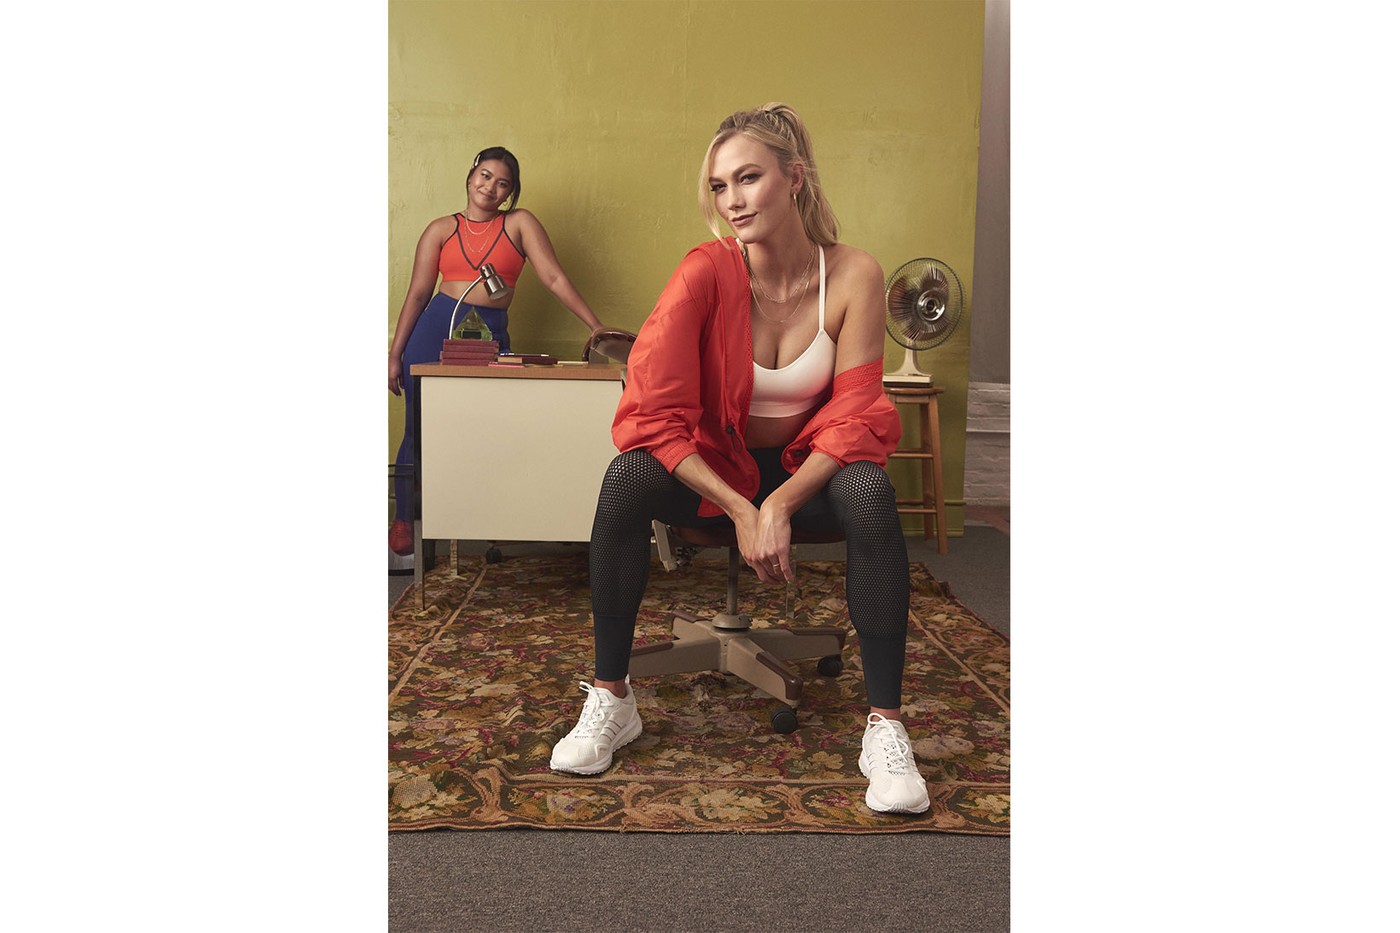 Карли Клосс и adidas создали коллекцию в поддержку женщин (фото 10)